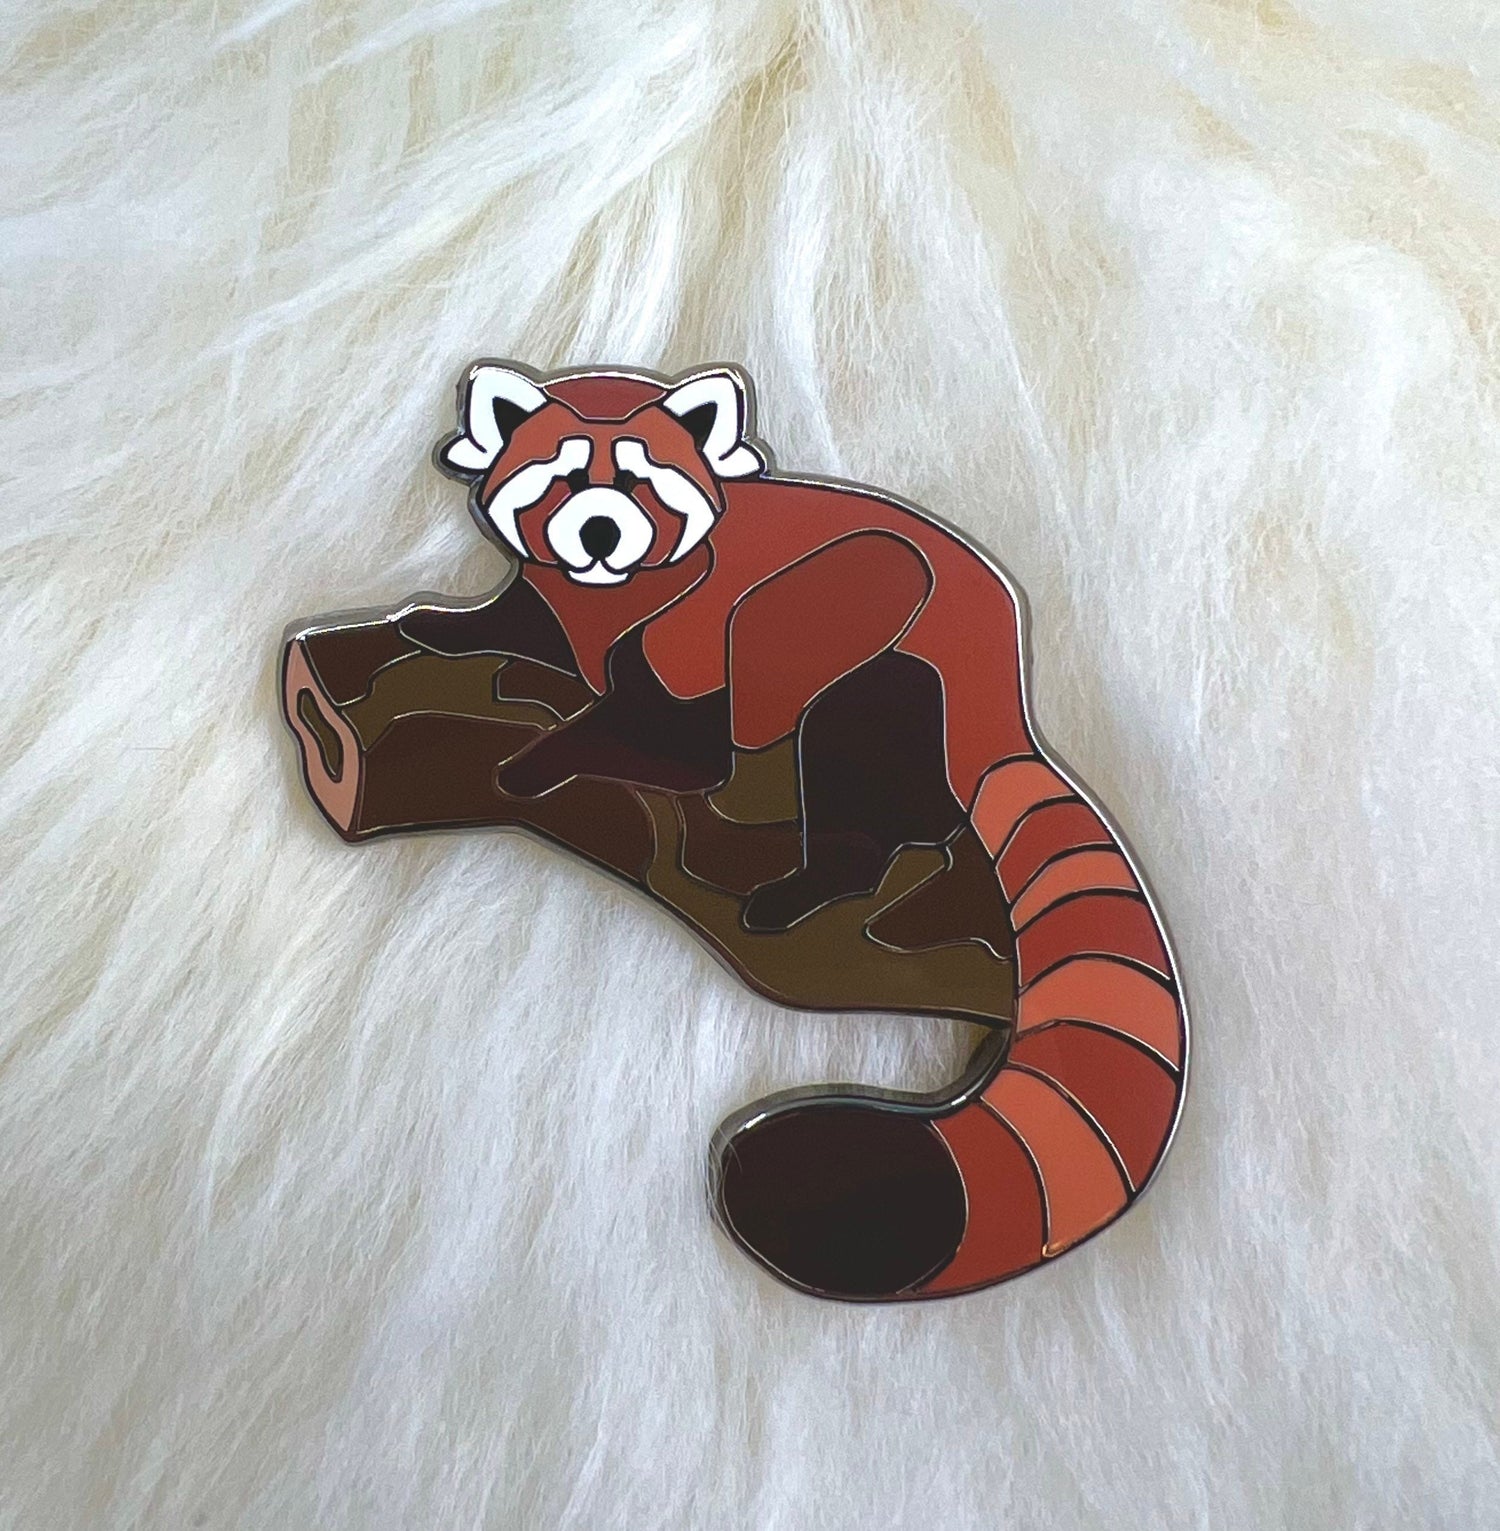 Red Panda Hard Enamel Pin | Red Panda Pin | Panda Pin | Animal Pin |